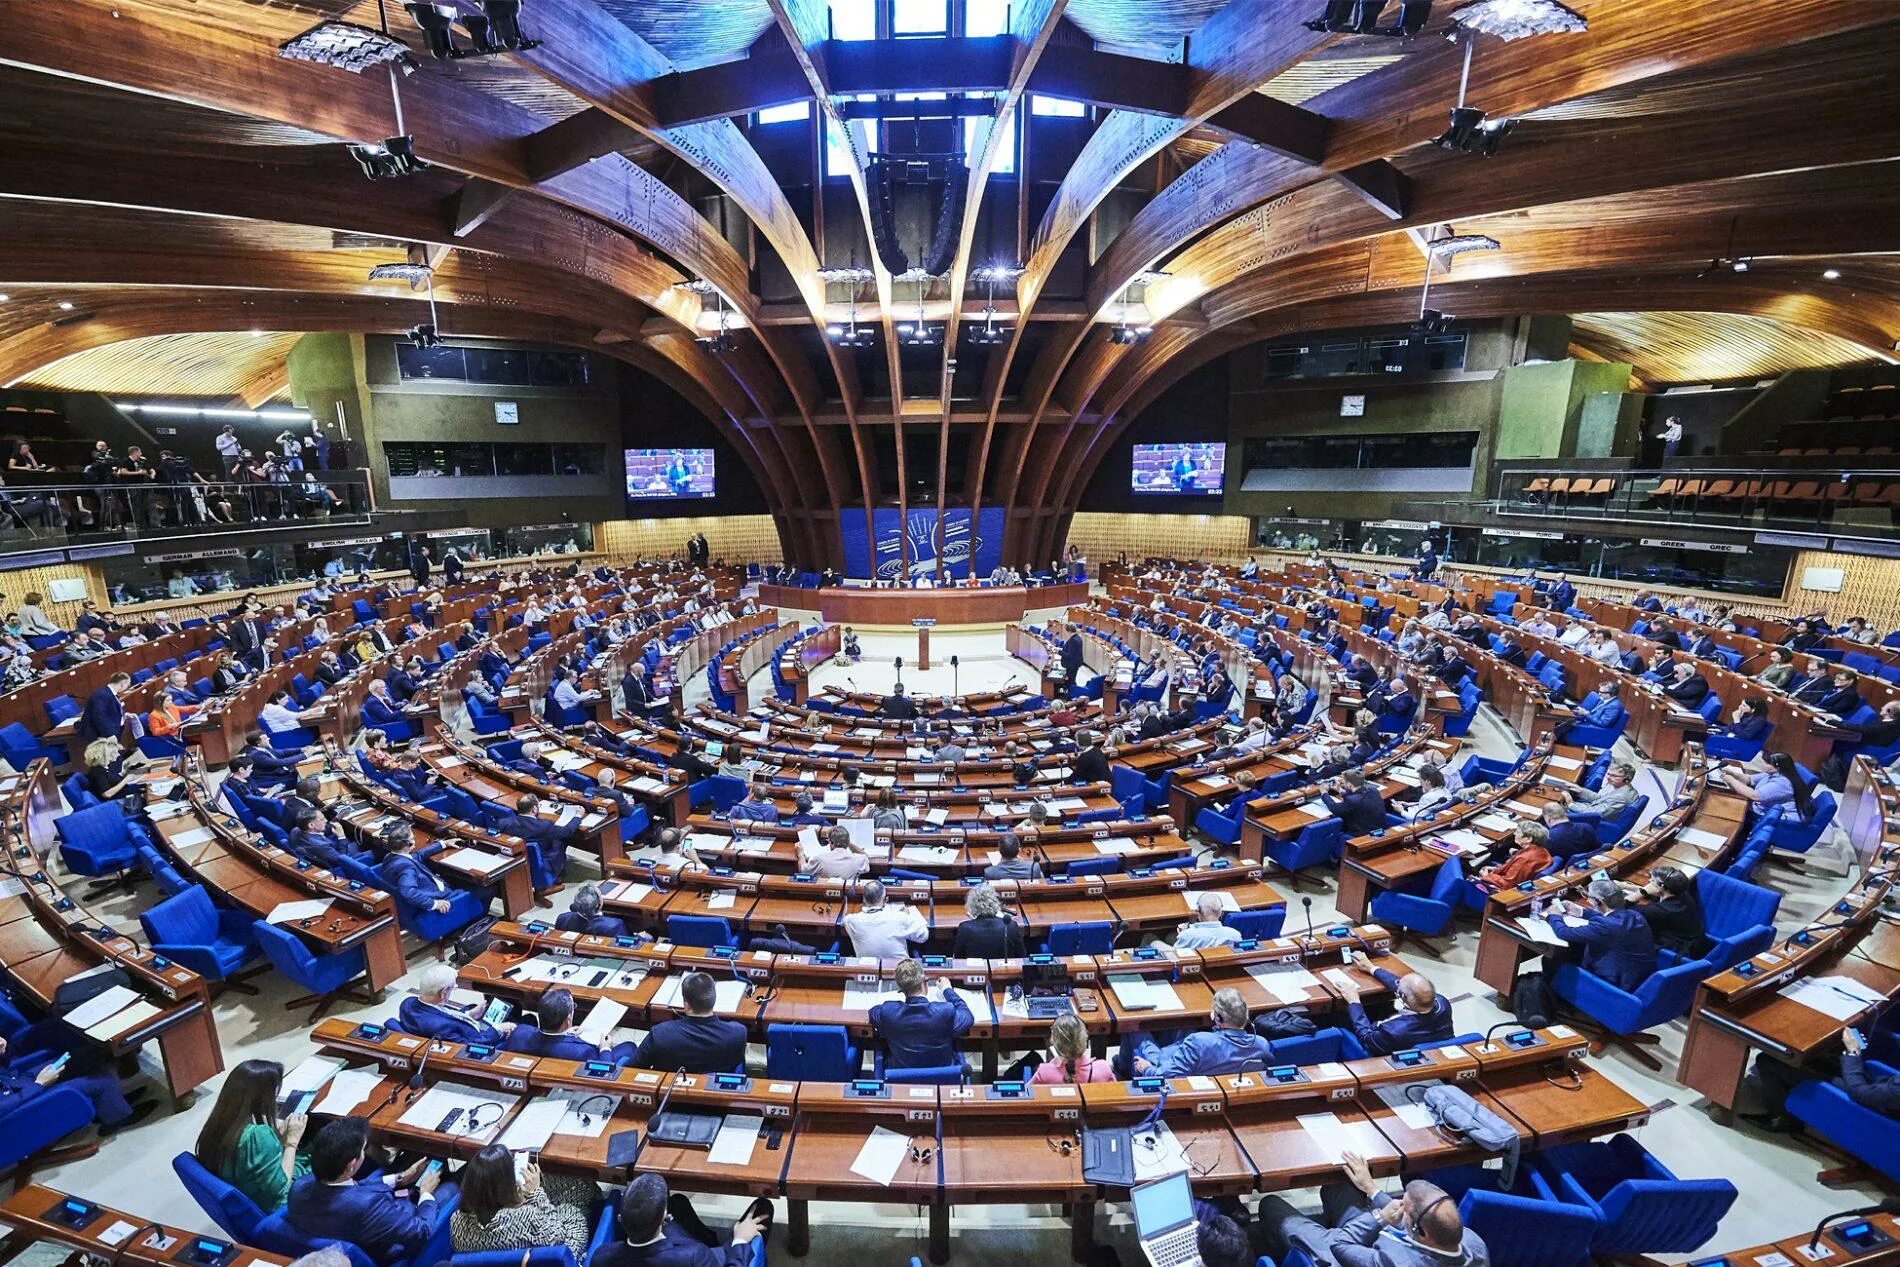 Зал заседаний парламентской Ассамблеи совета Европы в Страсбурге. Парламентская Ассамблея совета Европы (ПАСЕ). Совет Европы (Council of Europe).